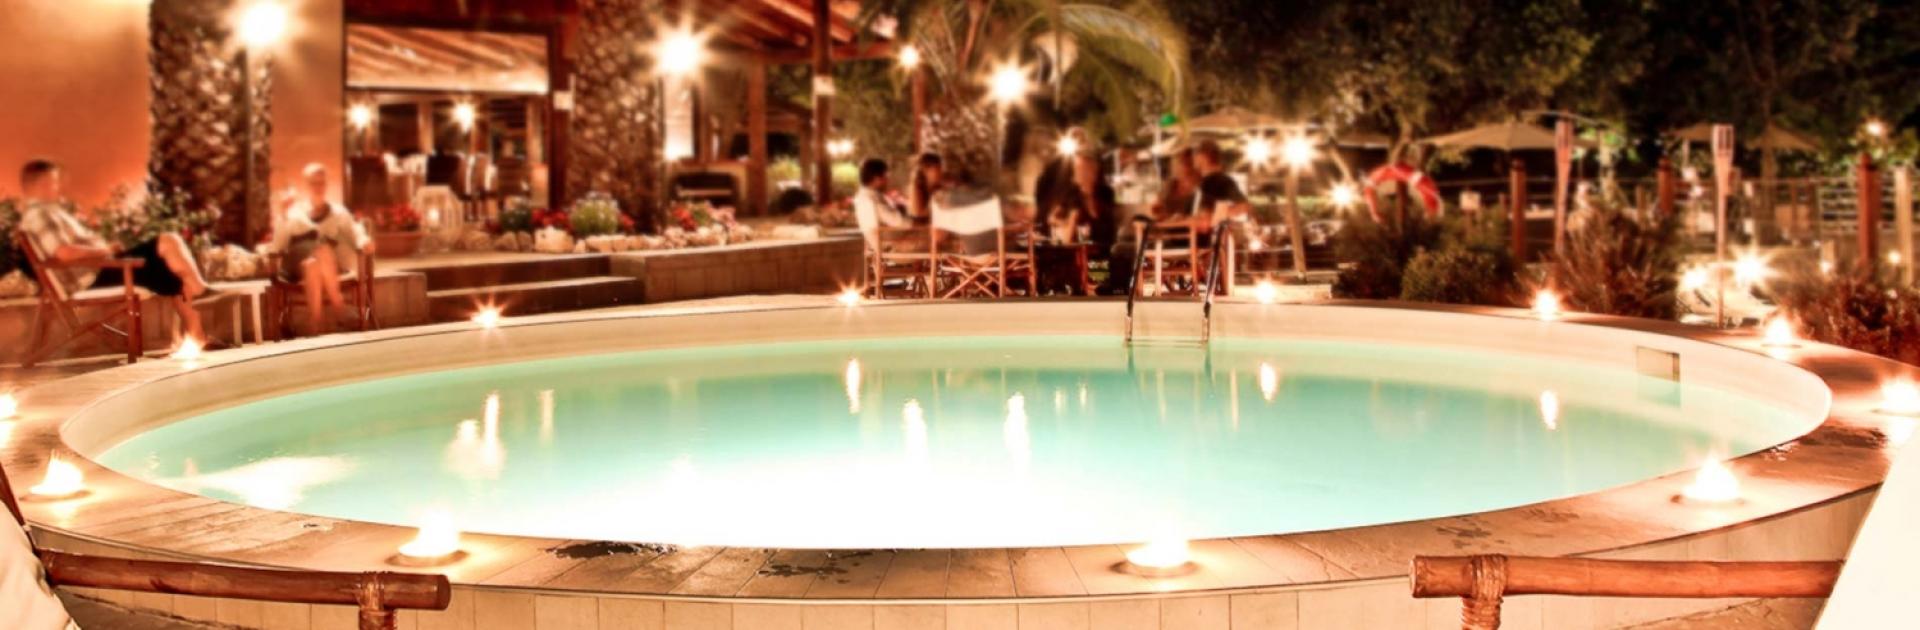 Une nuit confortable au bord de la piscine avec des palmiers et un éclairage ambiant.